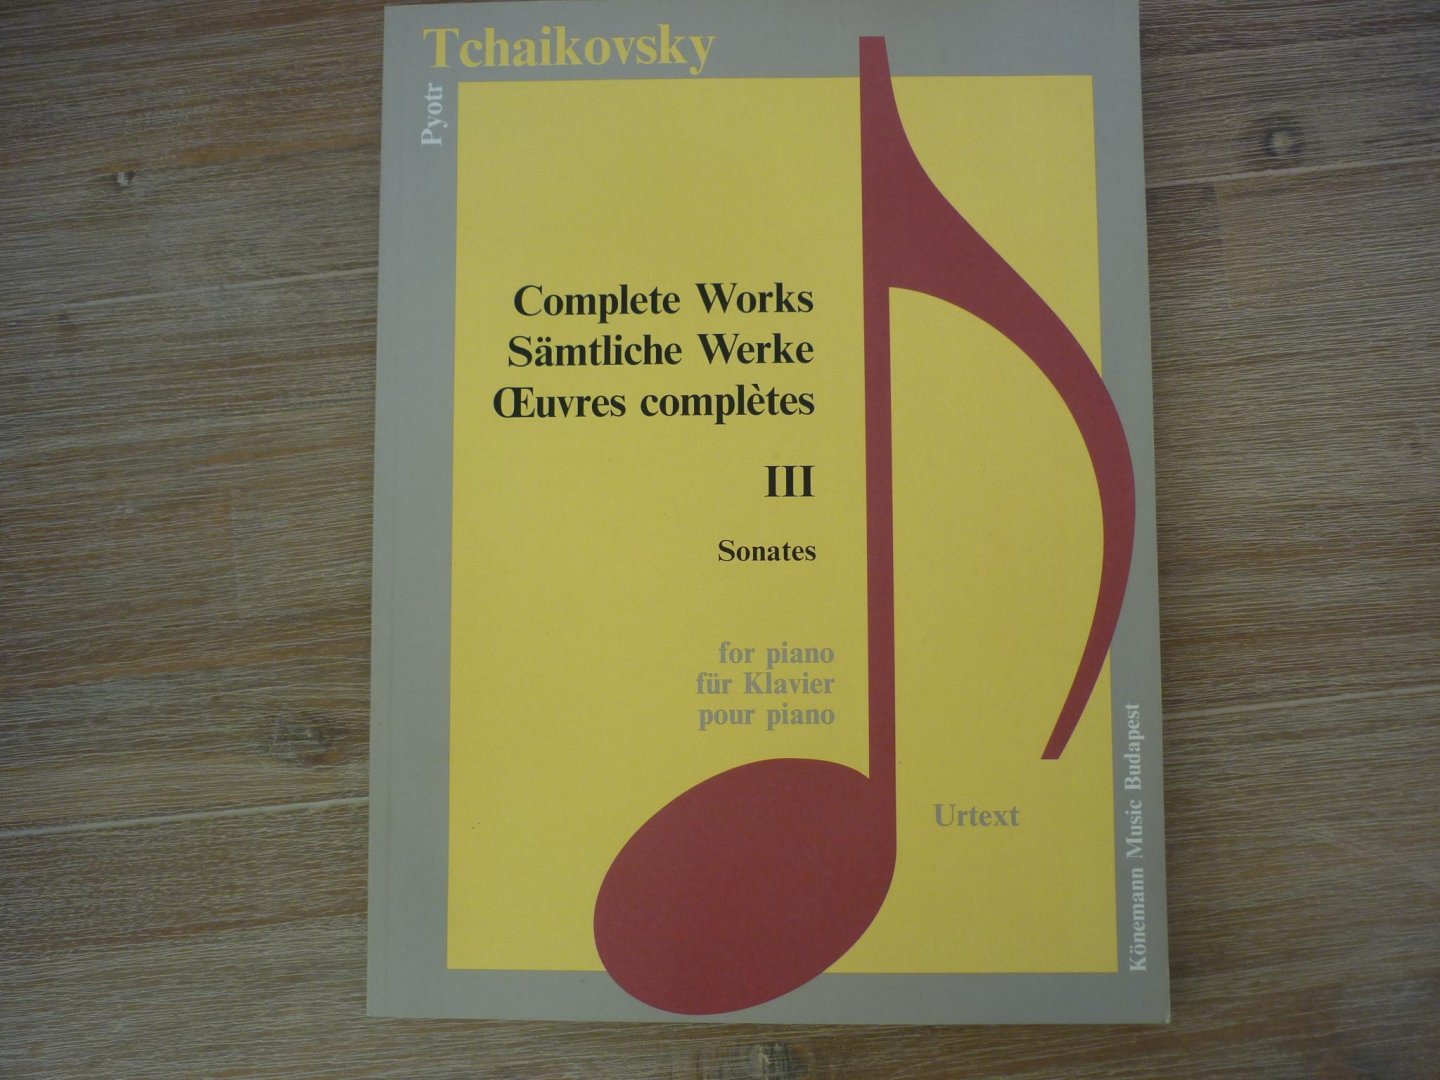 Tchaikovsky; Pyotr Ilyich (1840-1893) - Complete Works -Deel III;  Tchaikovsky; Sonates